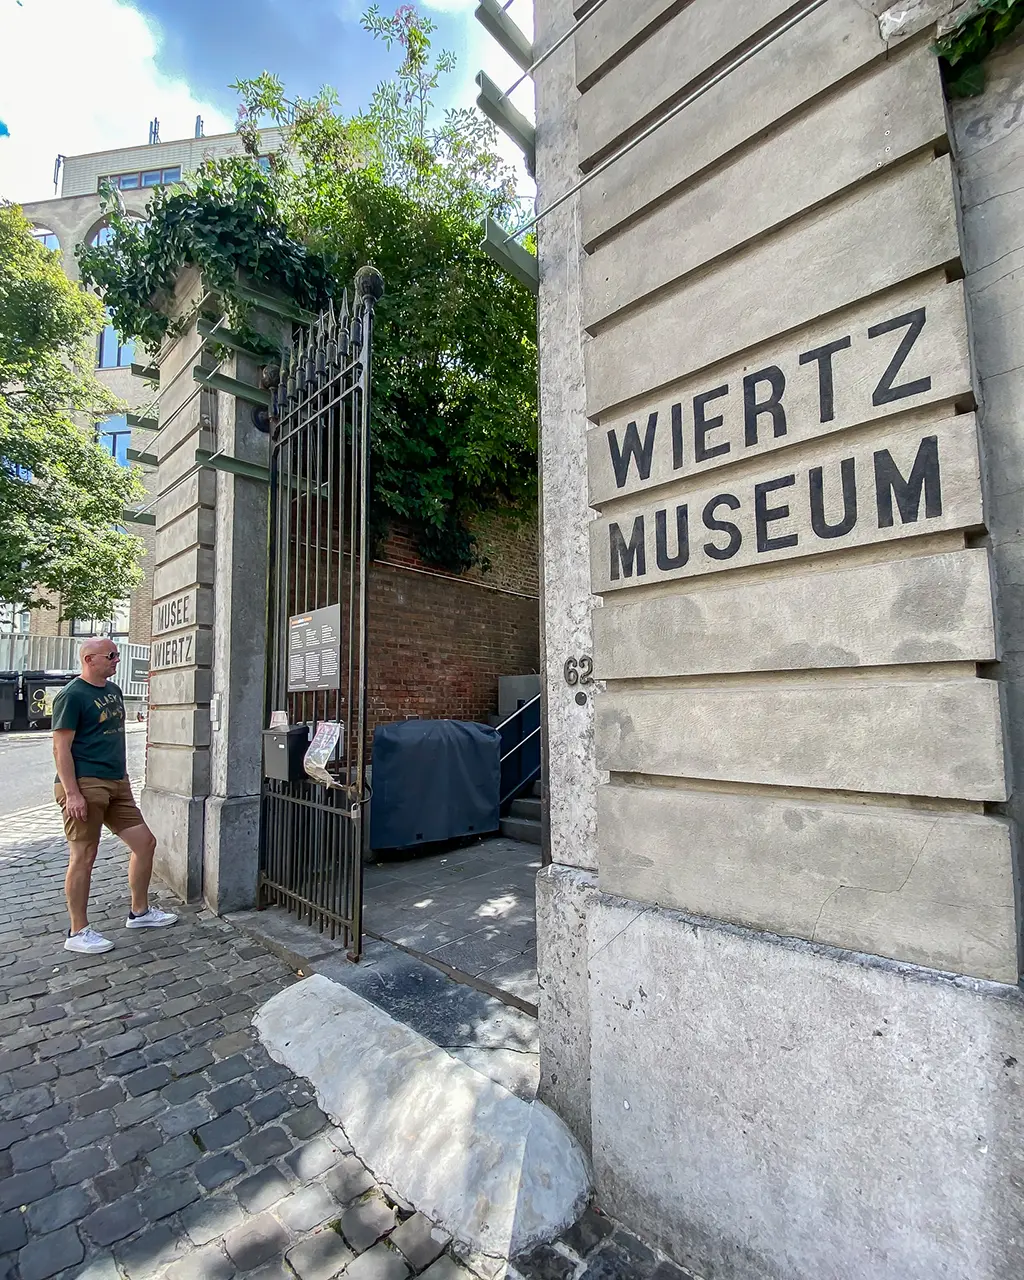 Musée Wiertz situé dans le quartier européen